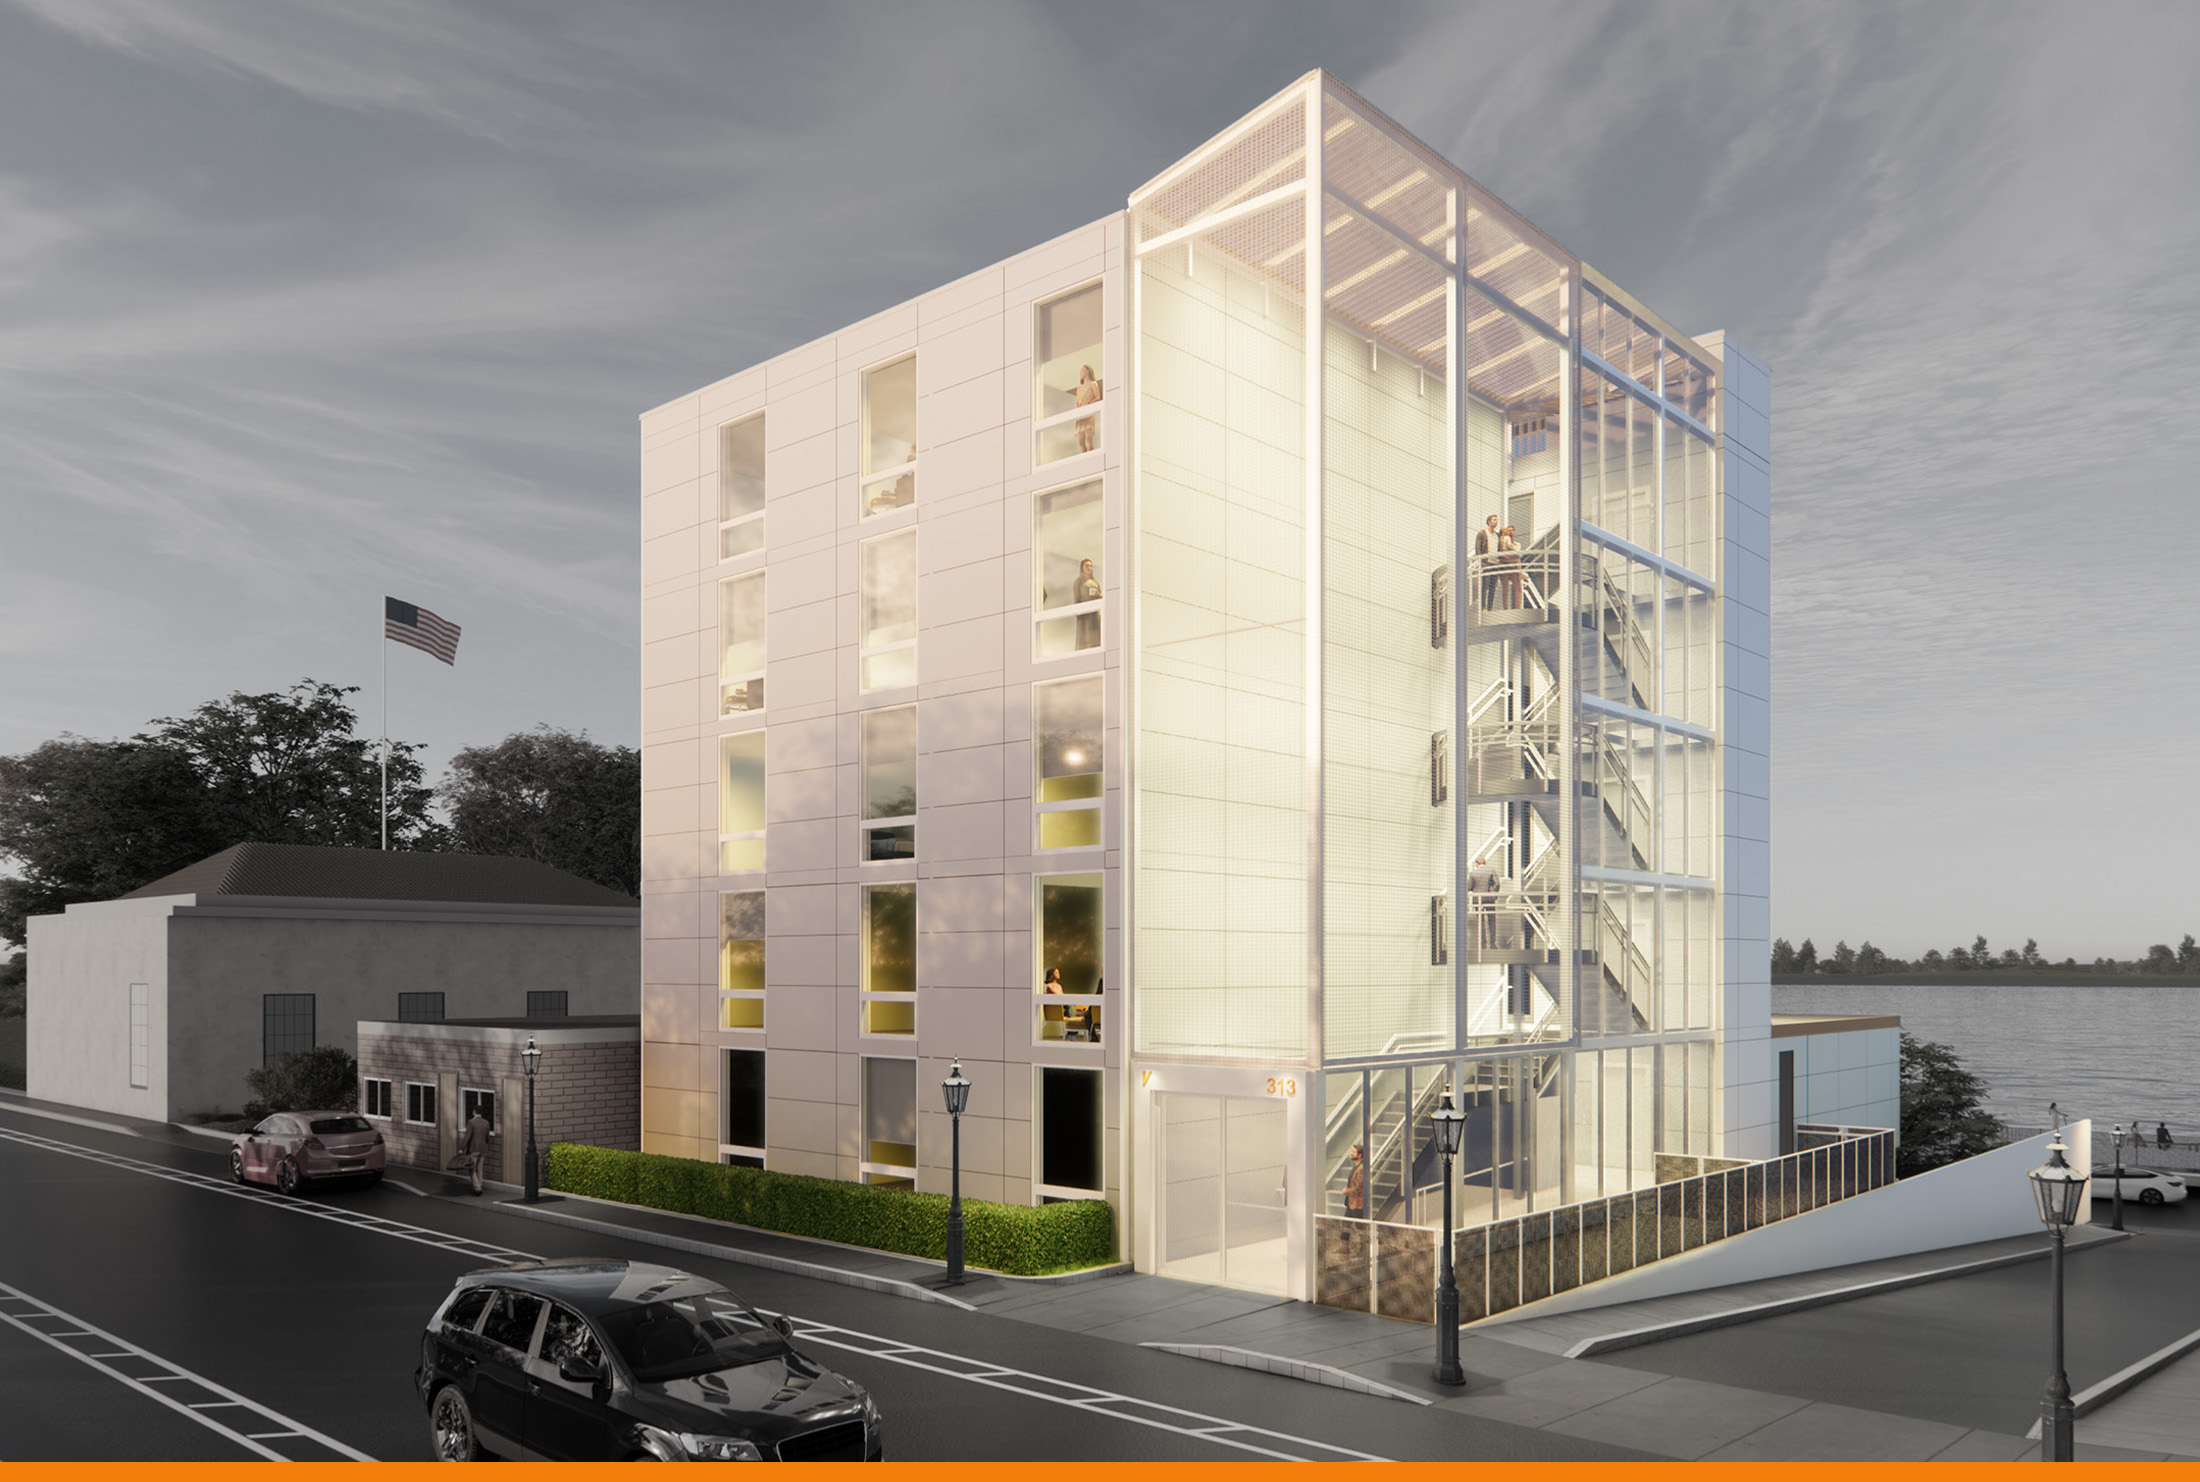 Prefabricated 30-unit apartment building rendering exterior